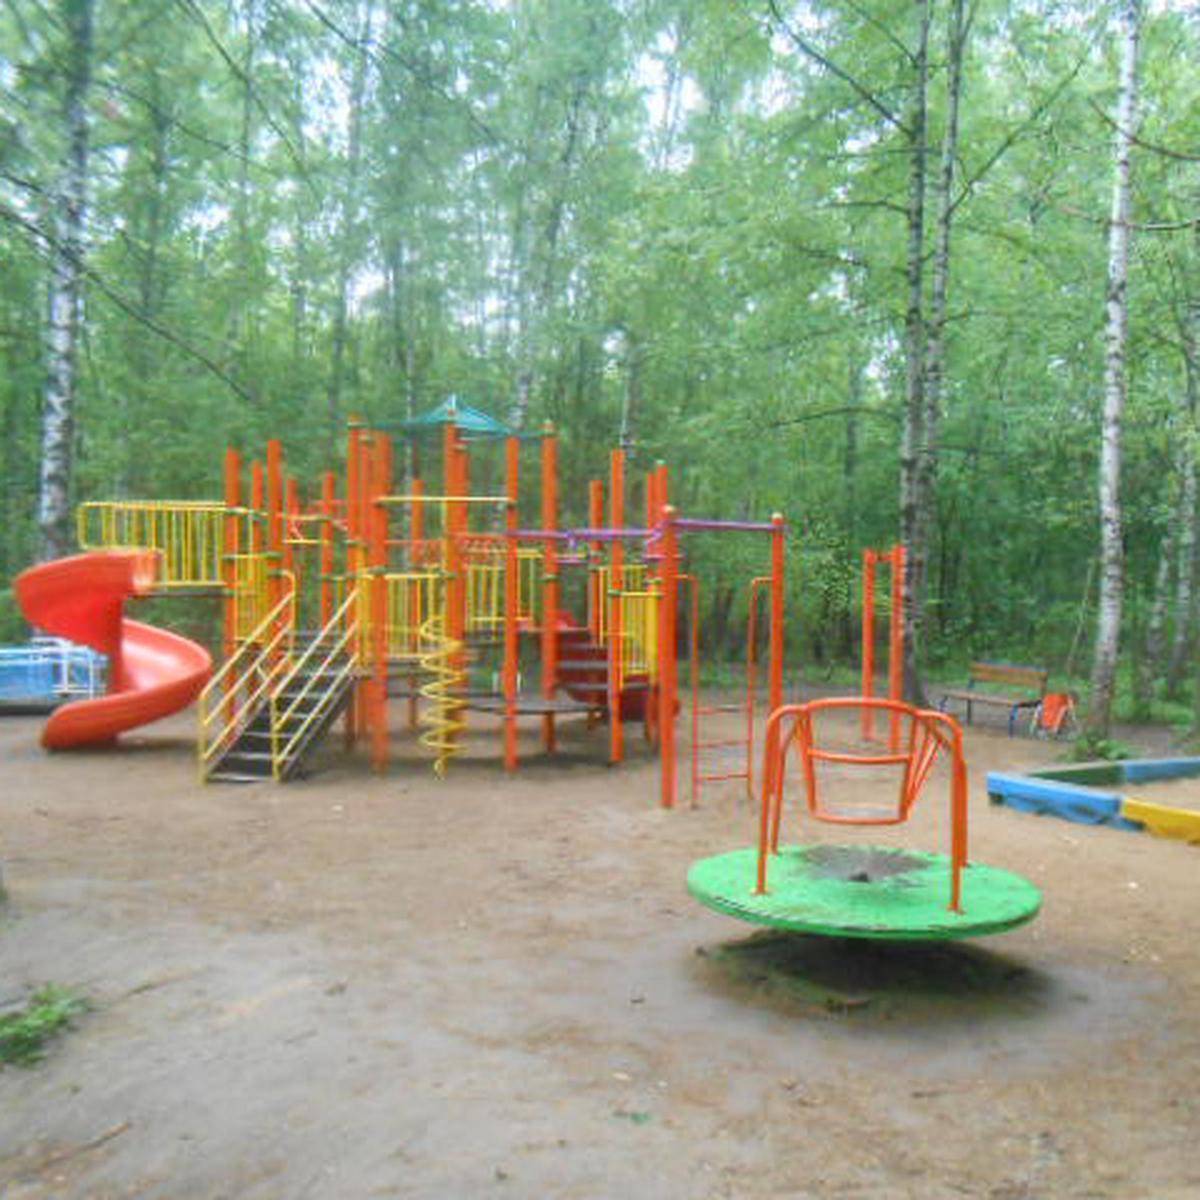 Фото: Детская игровая площадка №3, заказник Алтуфьевский